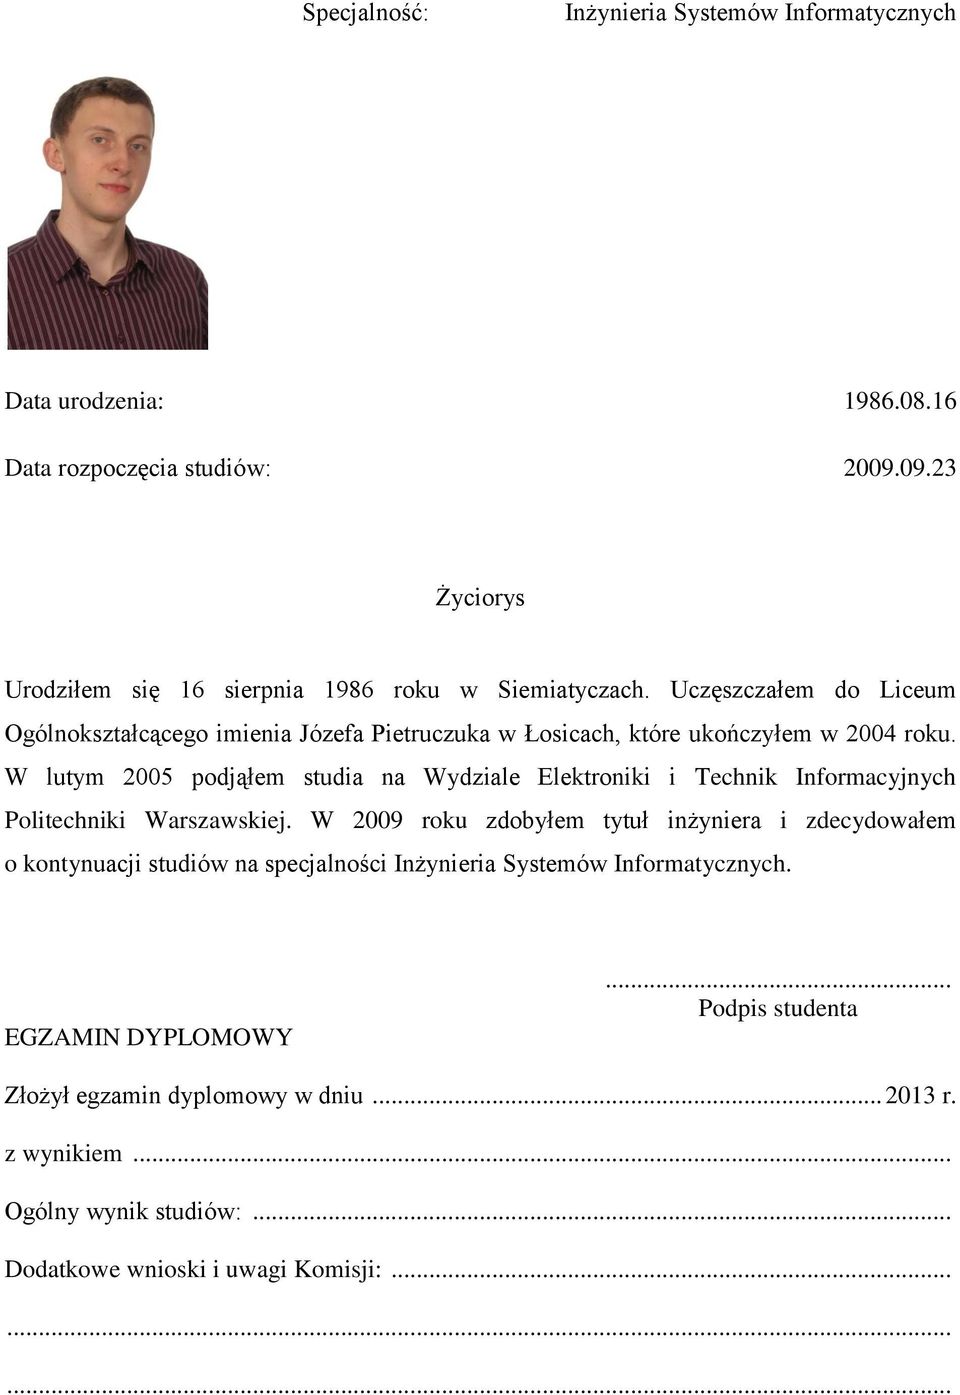 Uczęszczałem do Liceum Ogólnokształcącego imienia Józefa Pietruczuka w Łosicach, które ukończyłem w 2004 roku.